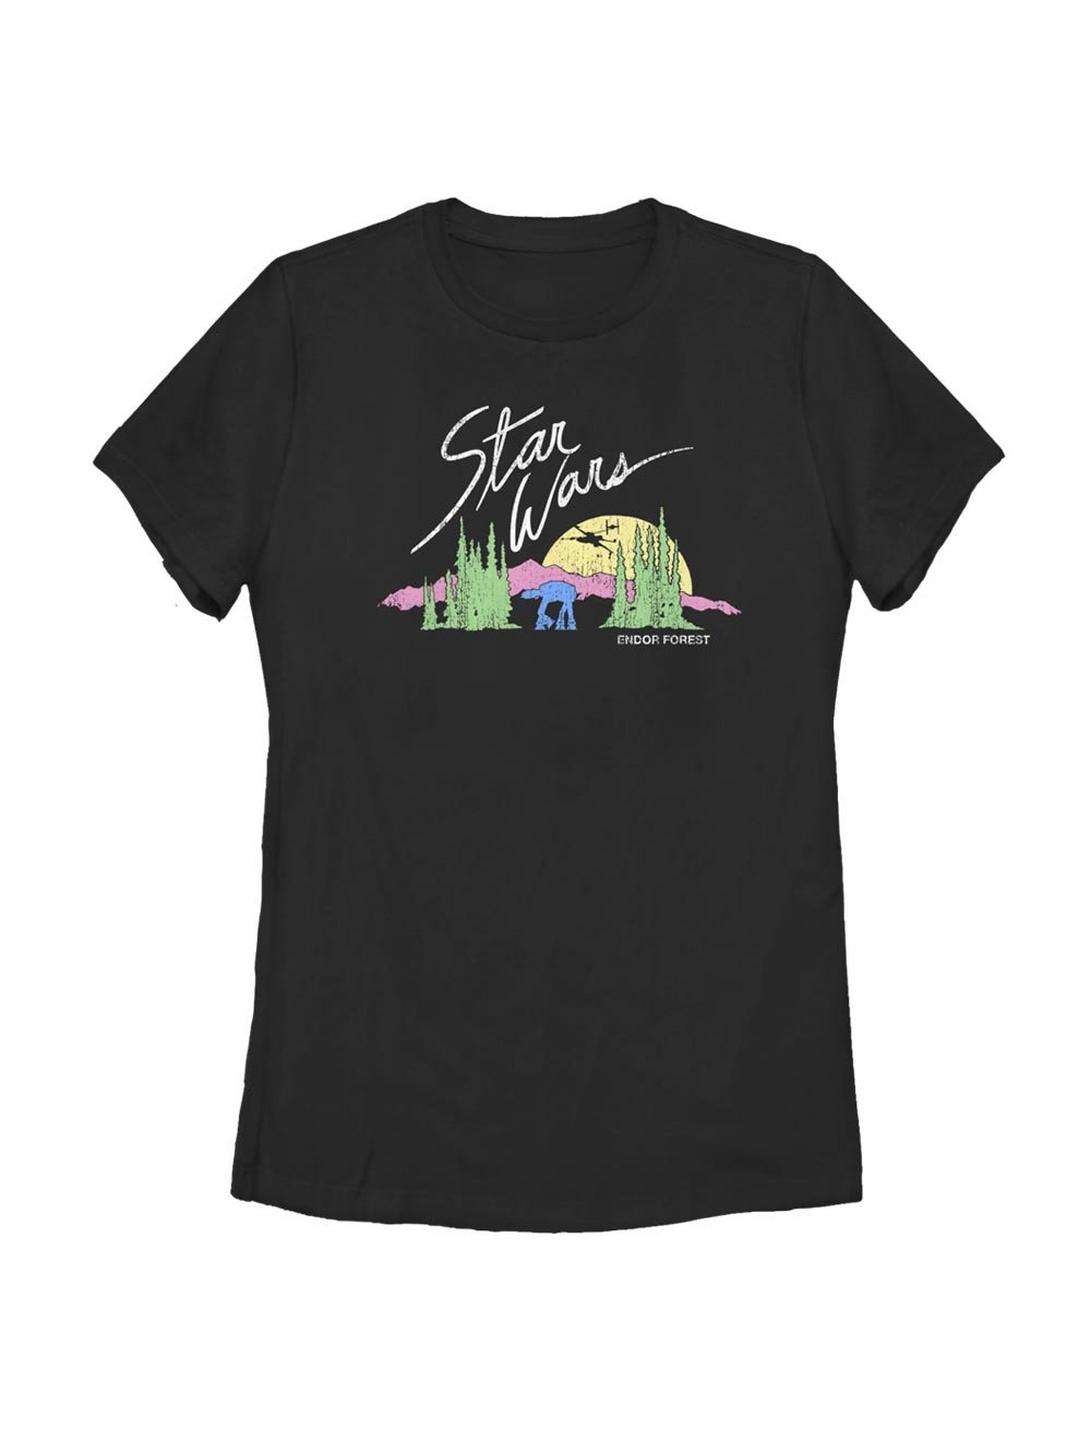 Star Wars Endor Vintage Womens T-Shirt, BLACK, hi-res